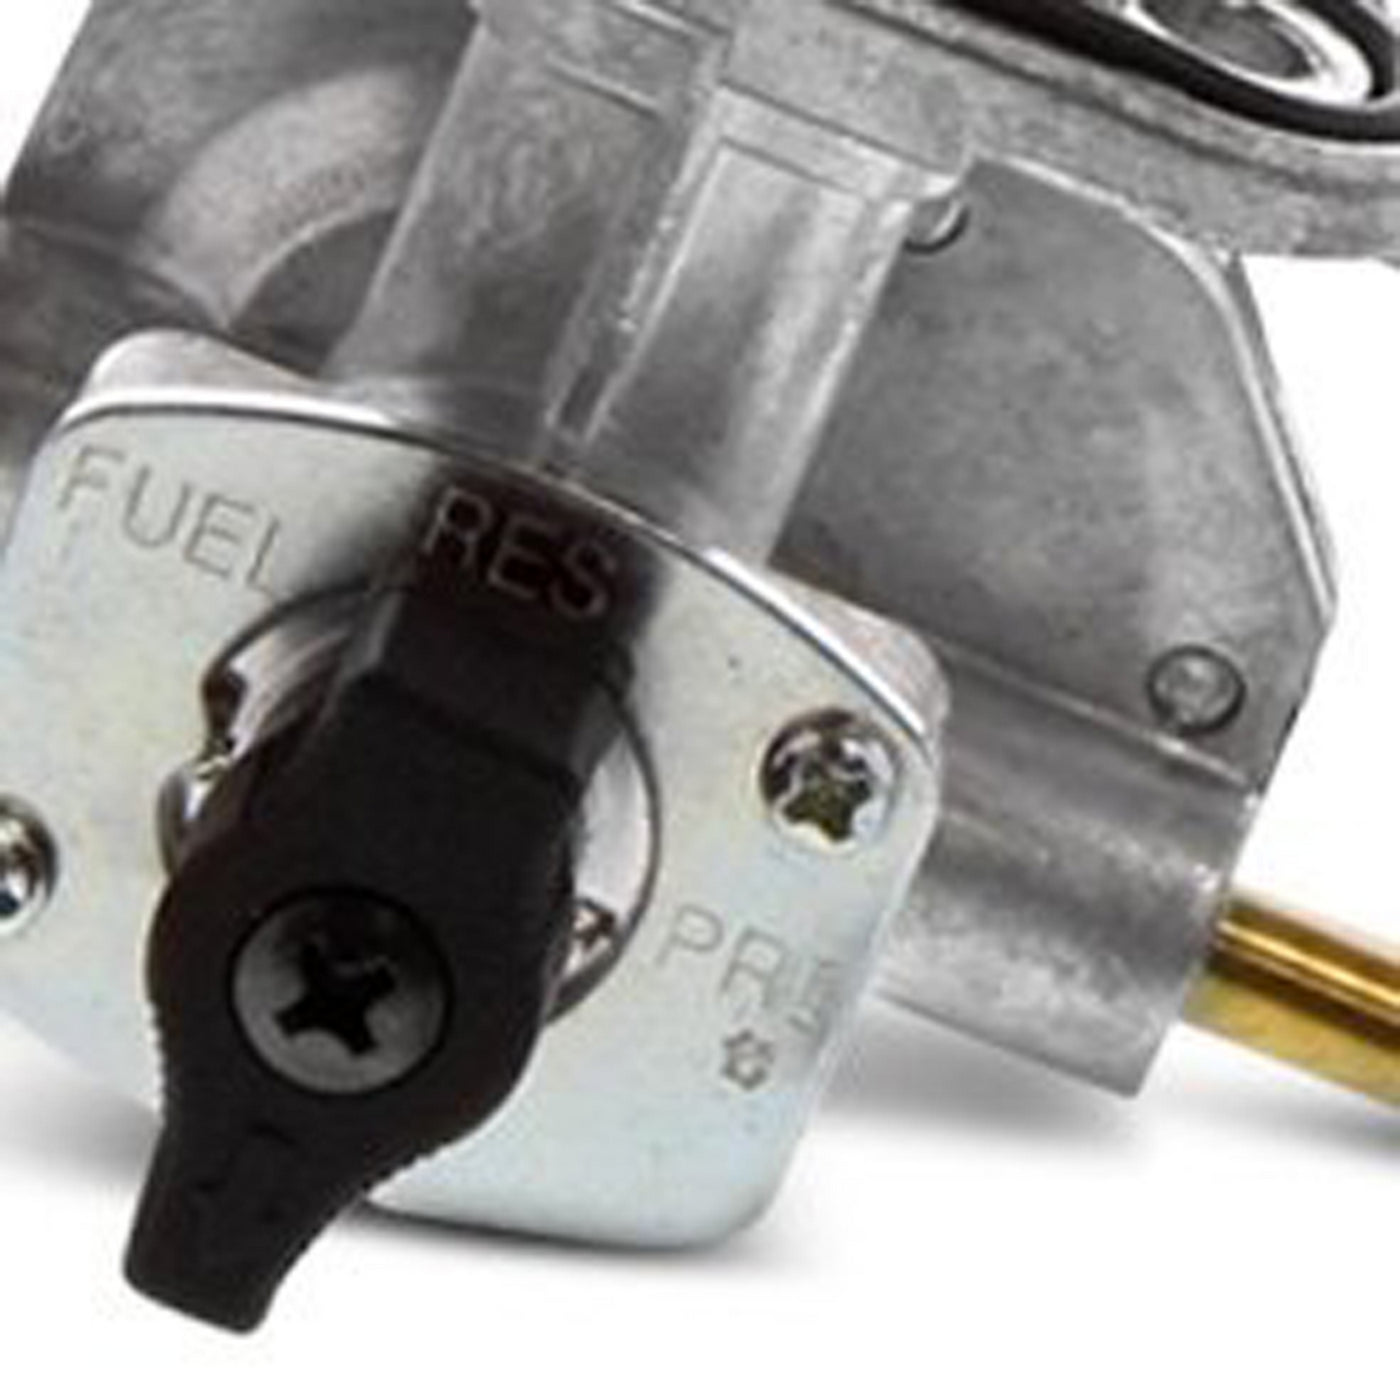 Fuel Star FS101-0110 Fuel Valve Kit #FS101-0110